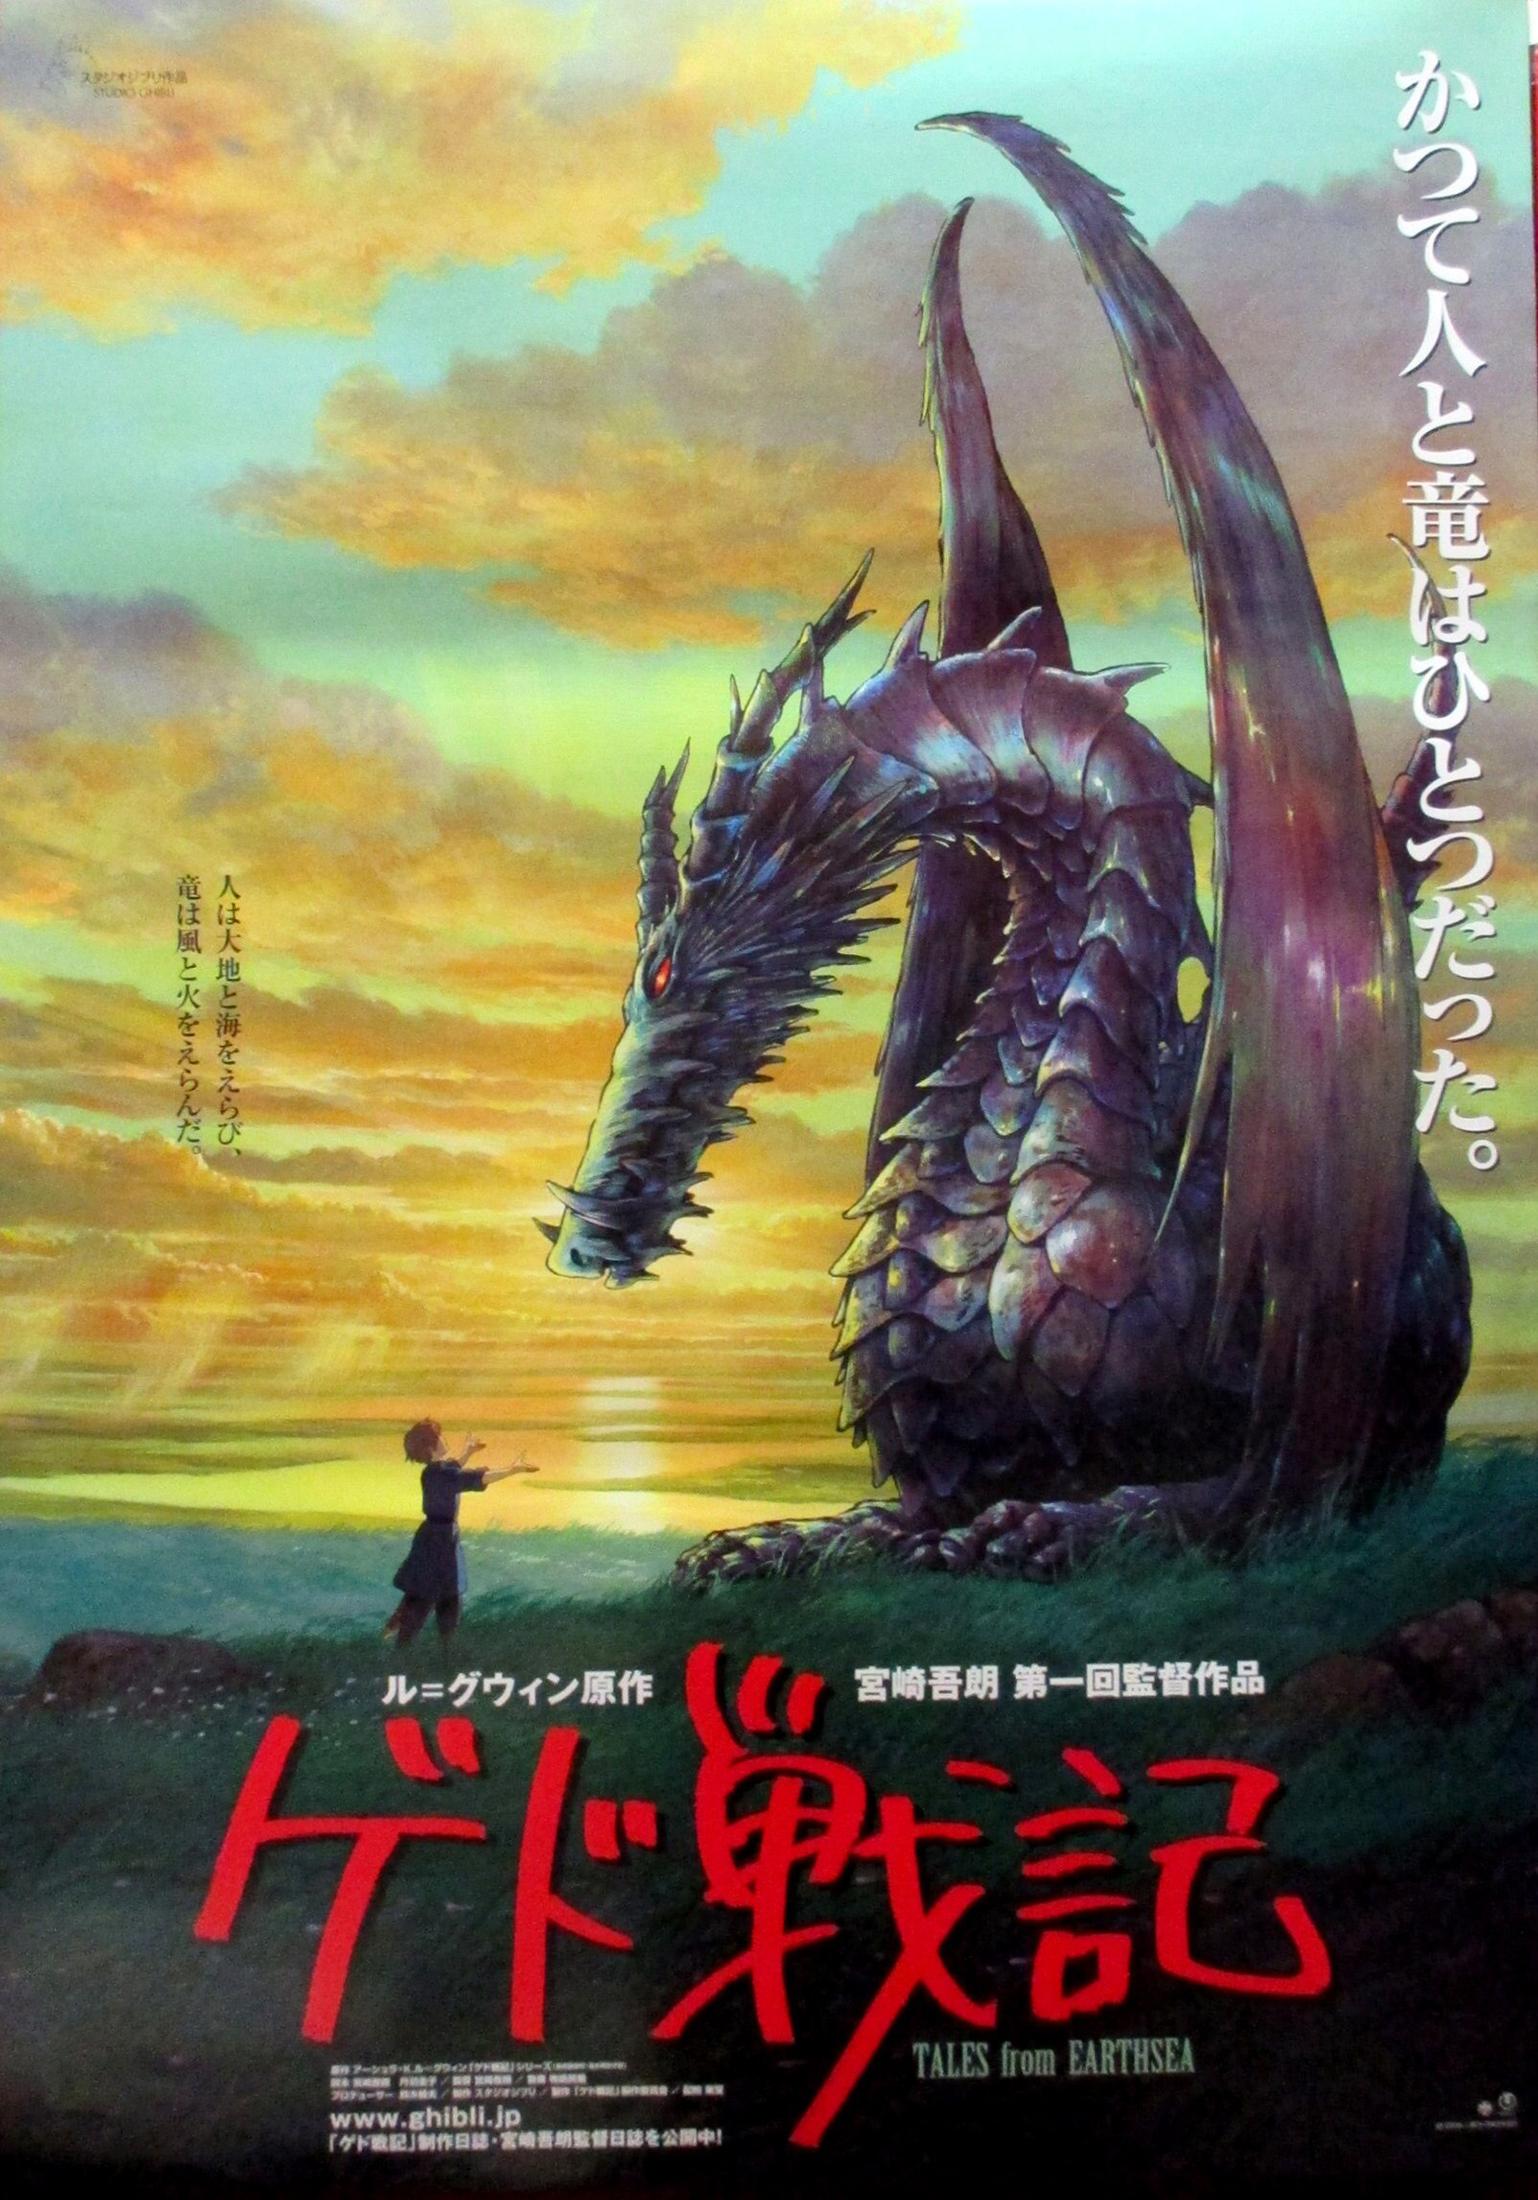 Tales from Earthsea Original Vintage Poster, Goro Miyazaki, Studio Ghibli - Print by Unknown